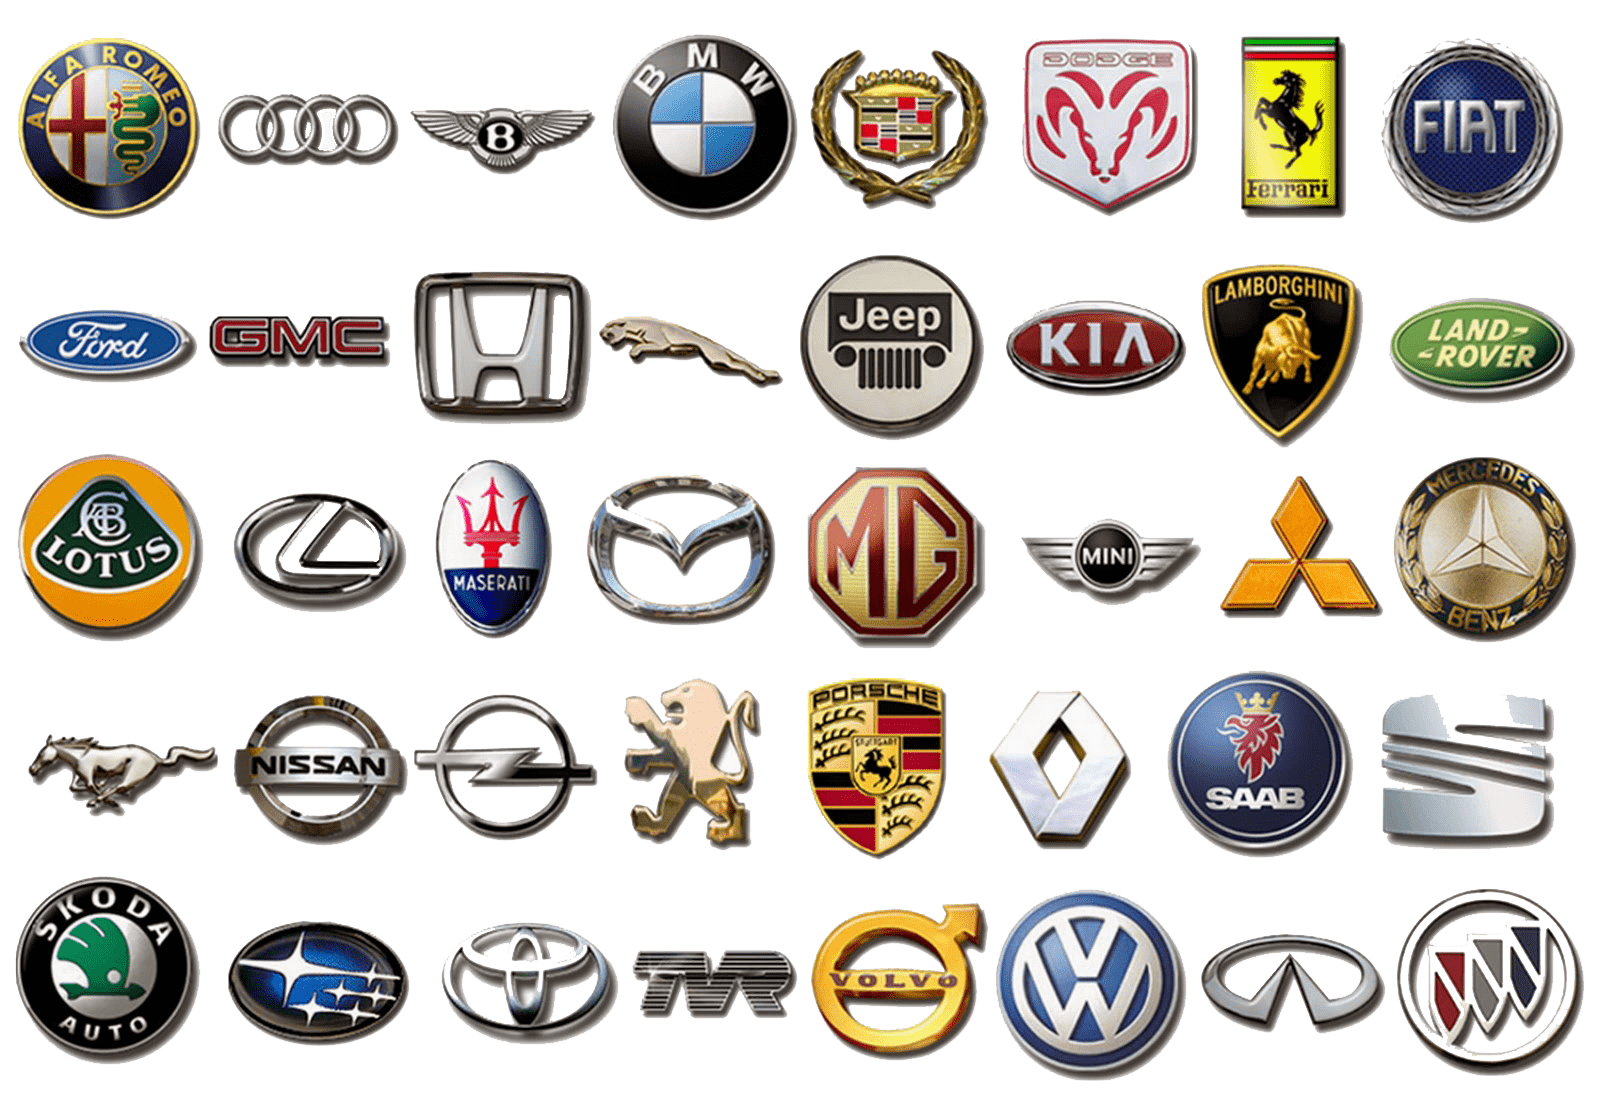 Авто со столичным знаком. Значки автомобилей. Марки автомобилей. Марки автомобилей со значками. Логотип АФ.